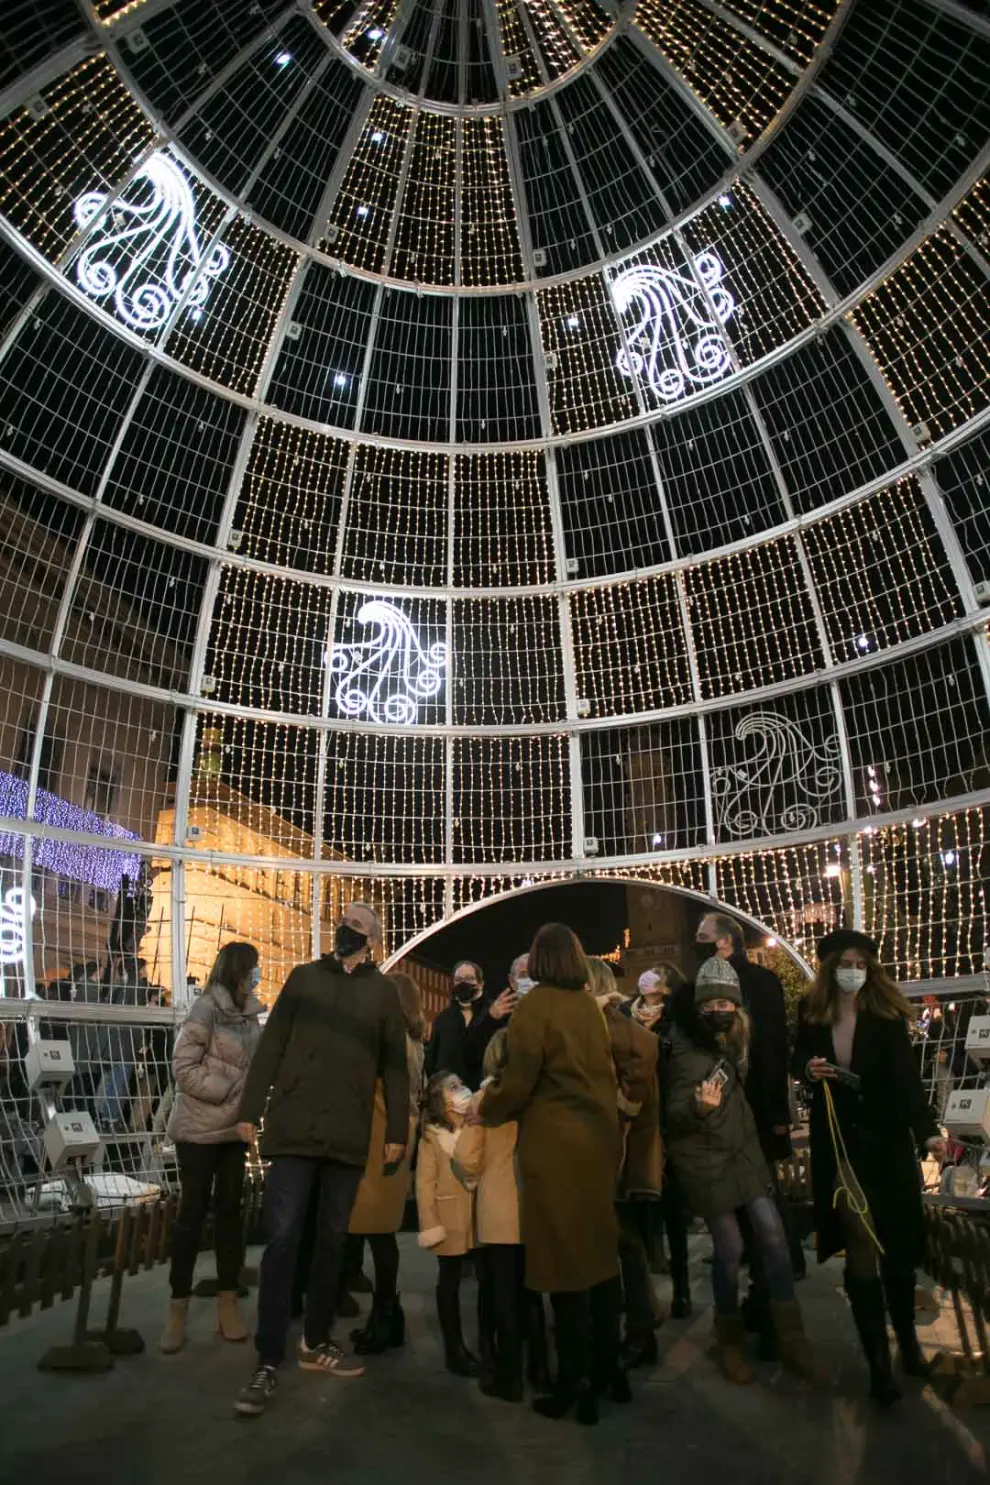 Fotos del encendido de las luces de Navidad de Zaragoza